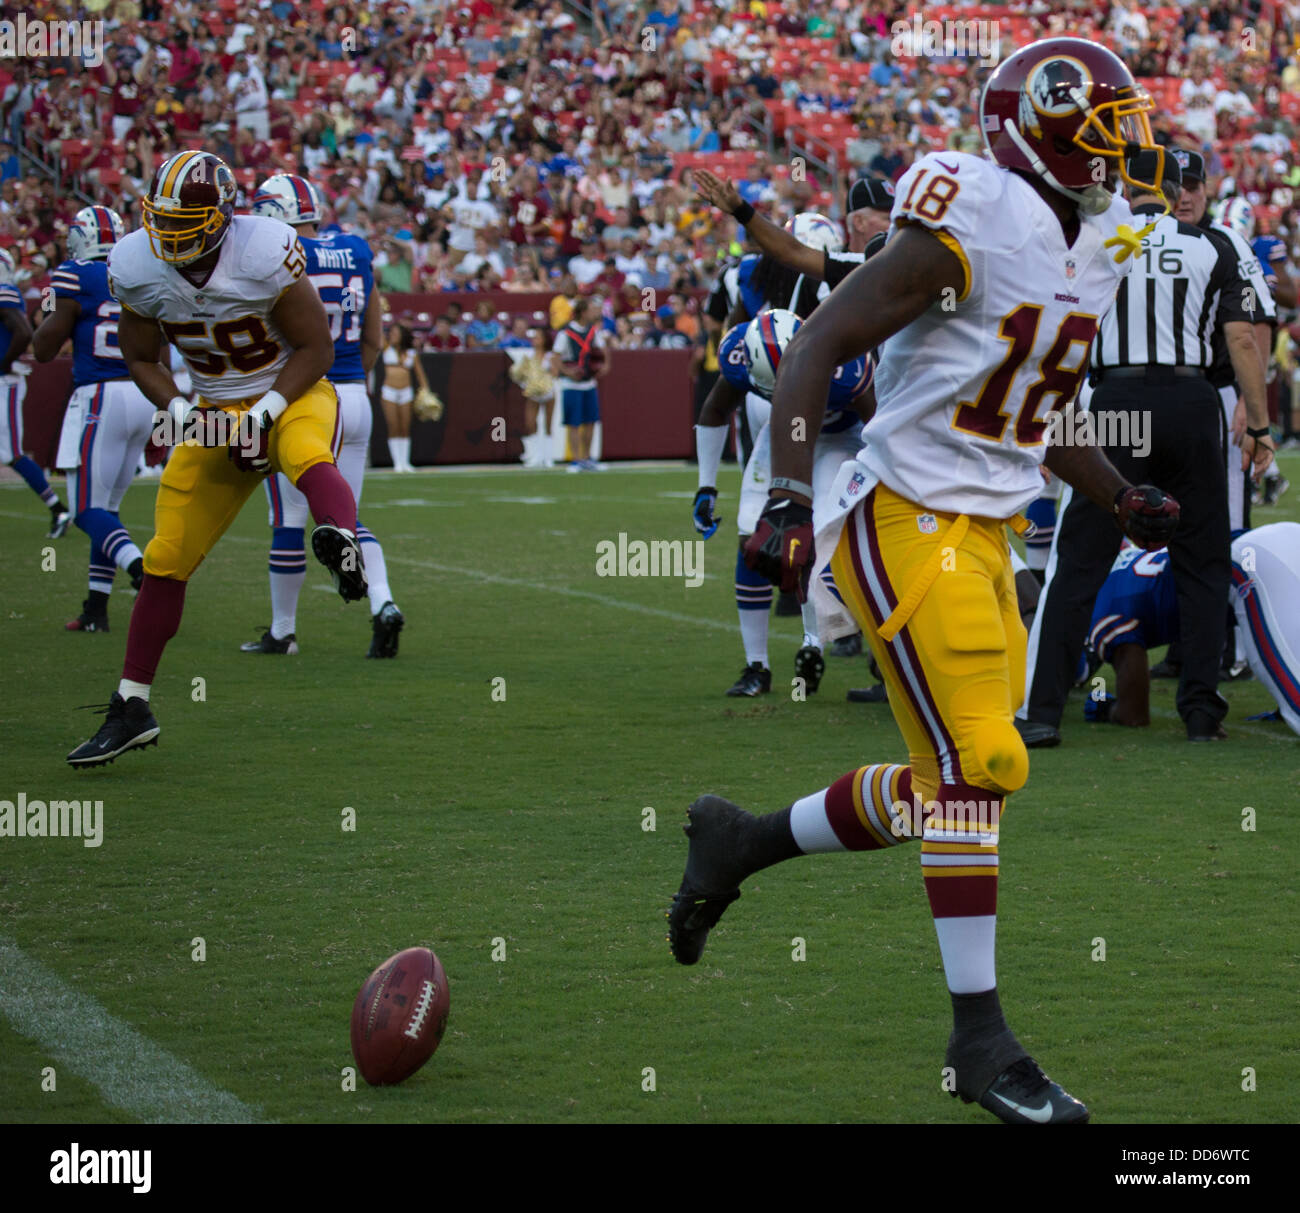 24. August 2013, übernimmt Landover, MD FedEx Field Washington Redskins Büffel-Rechnungen für Dritte Vorsaison Spiel für 2013. Stockfoto